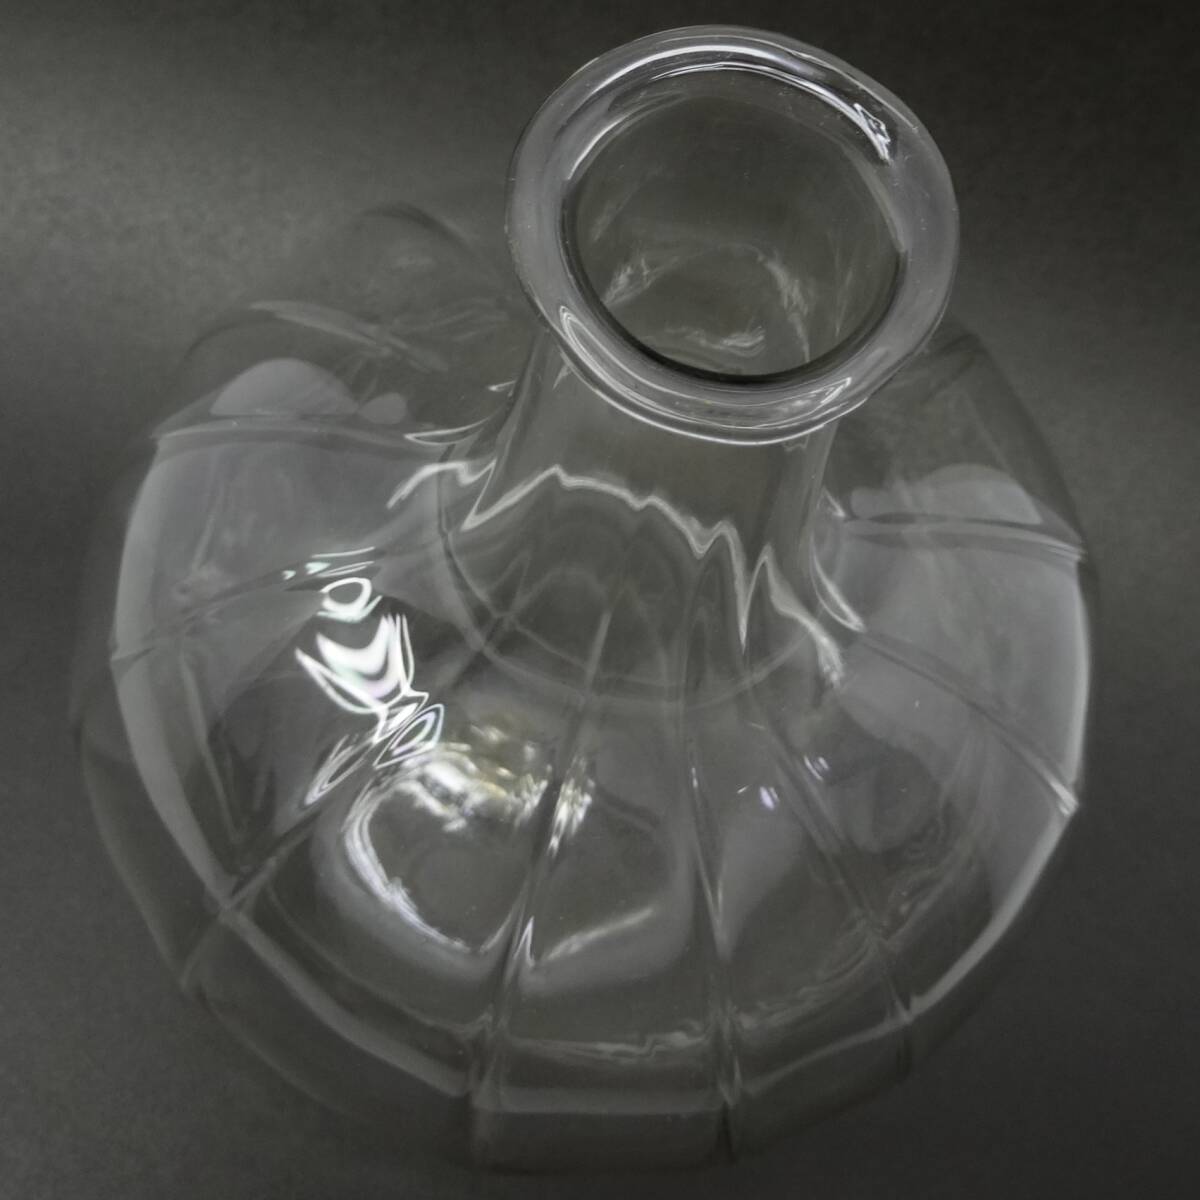 L12 江戸ガラス かぶら型 徳利 筋入り 古い 吹きガラス ガラス瓶 オニオンボトル 時代硝子 骨董_画像8